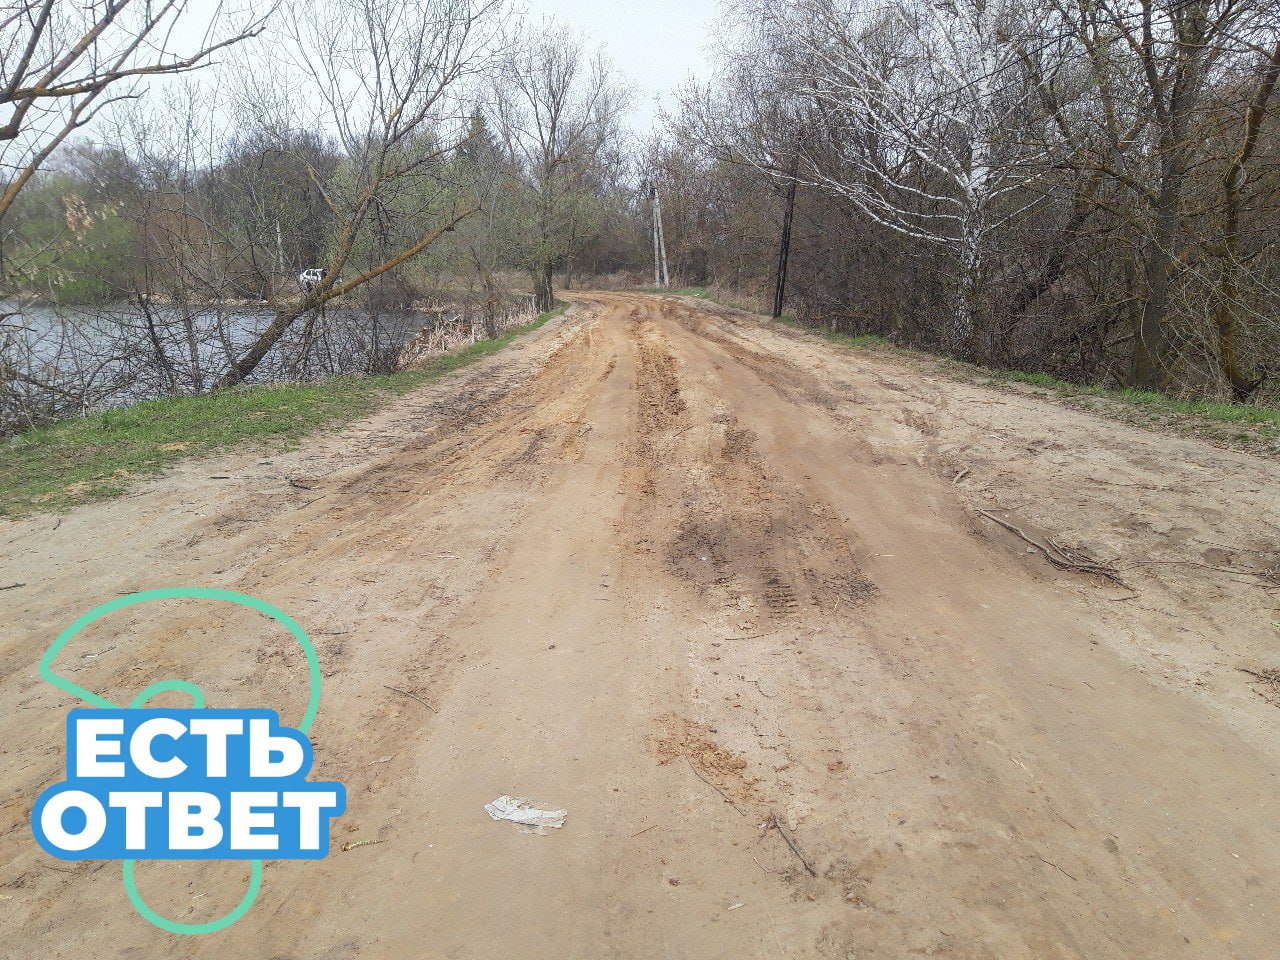 Жители села Наровчат интересуются состоянием плотины